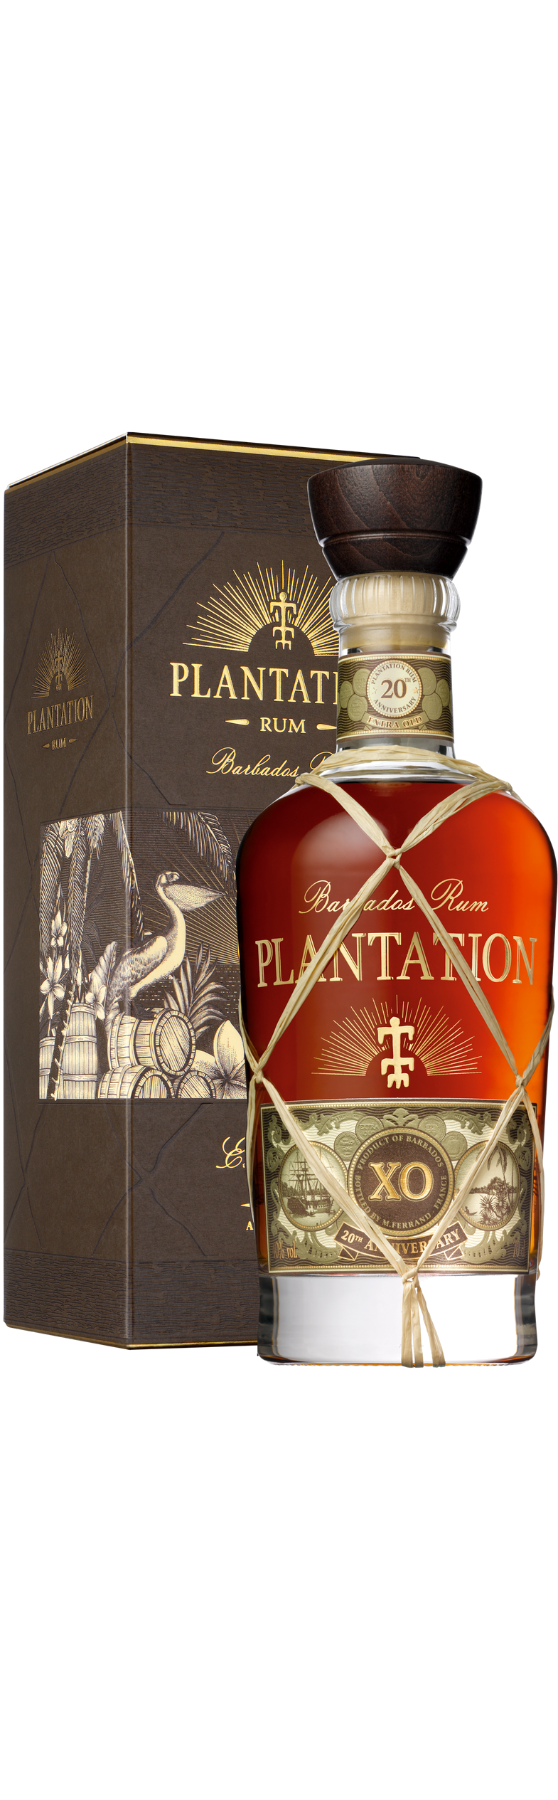 Plantation Barbados Rum XO 20th Anniversary 40% vol.